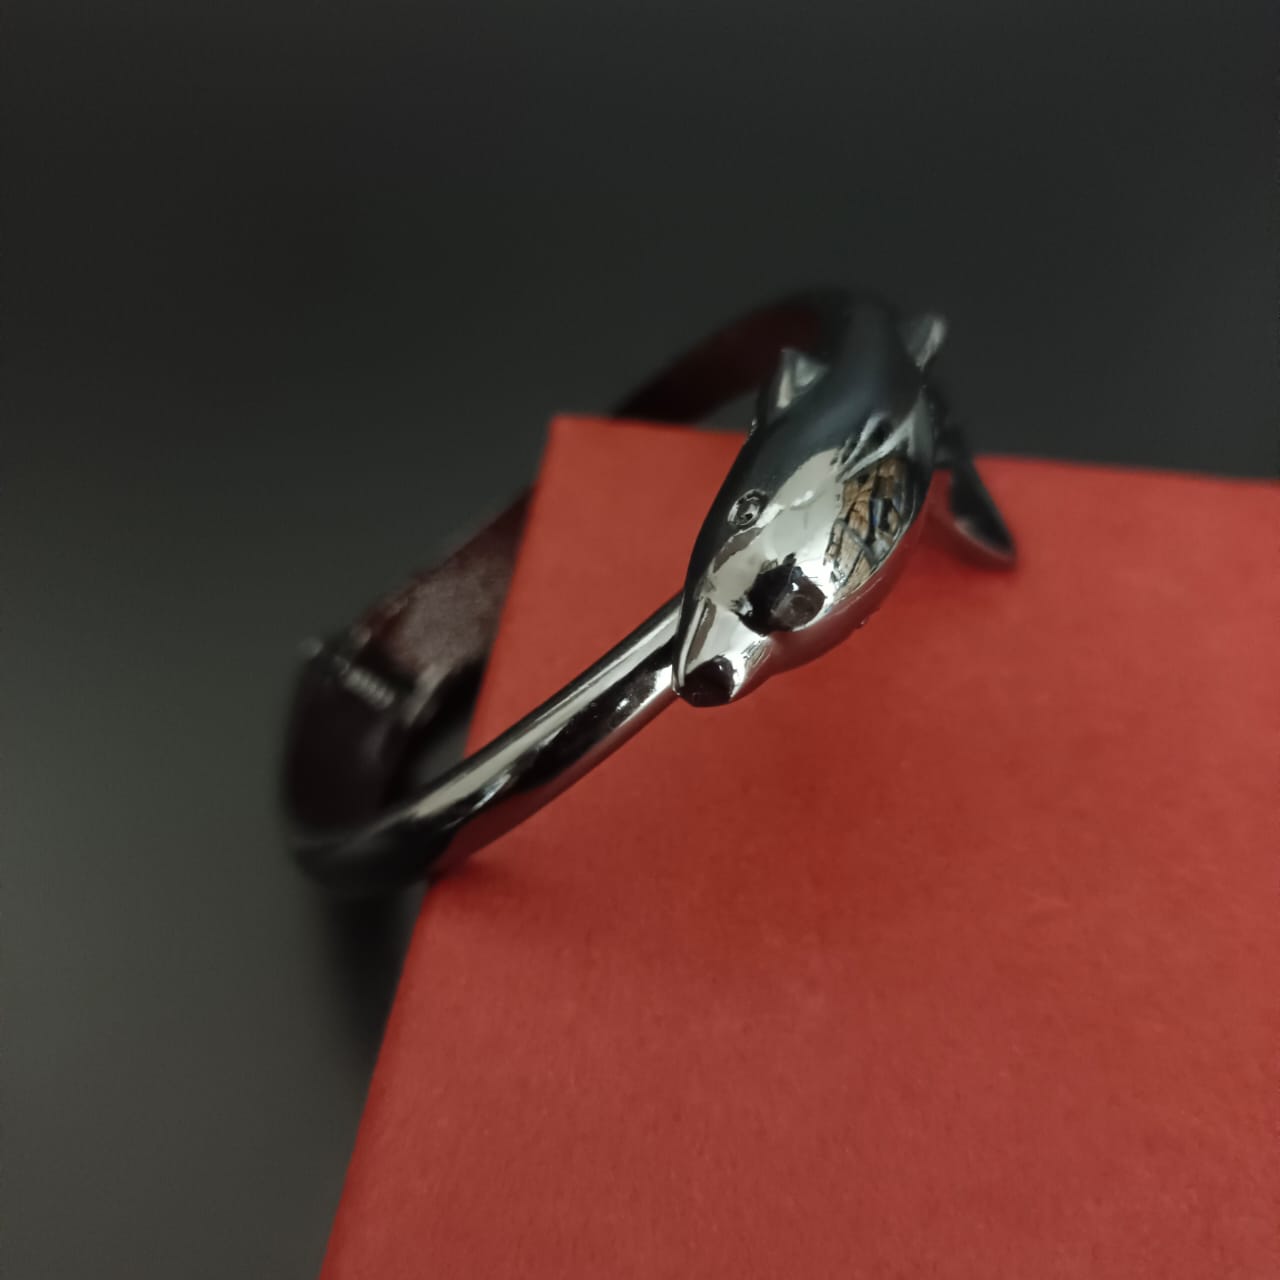 New Silver Dolphin Design Bracelet For Women and Girl-Sunglassesmart